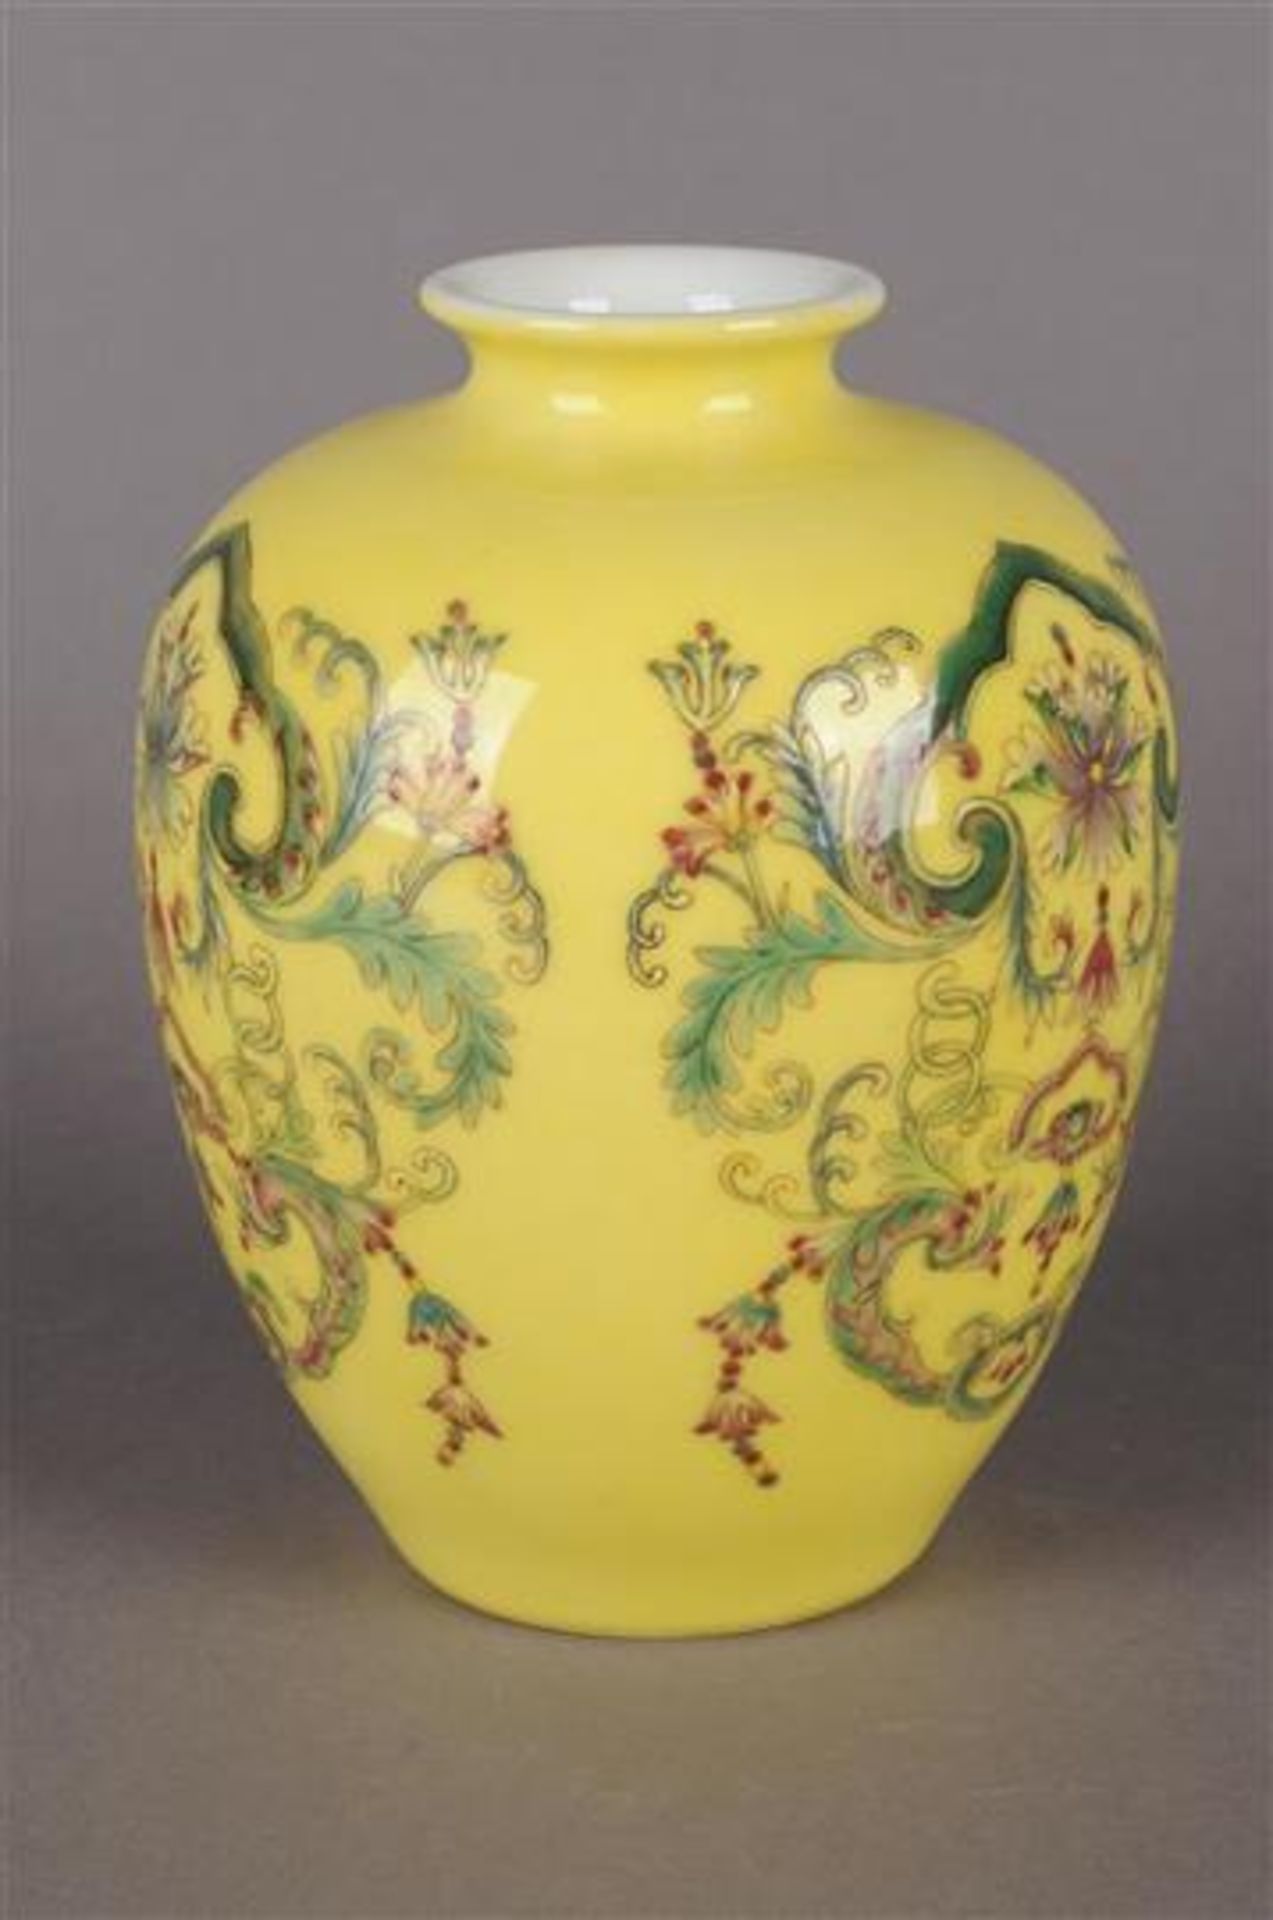 Polychroom porseleinen vaas met decor van bloemen en guirlandes, gemerkt met zegelmerk, China 20e - Bild 2 aus 6